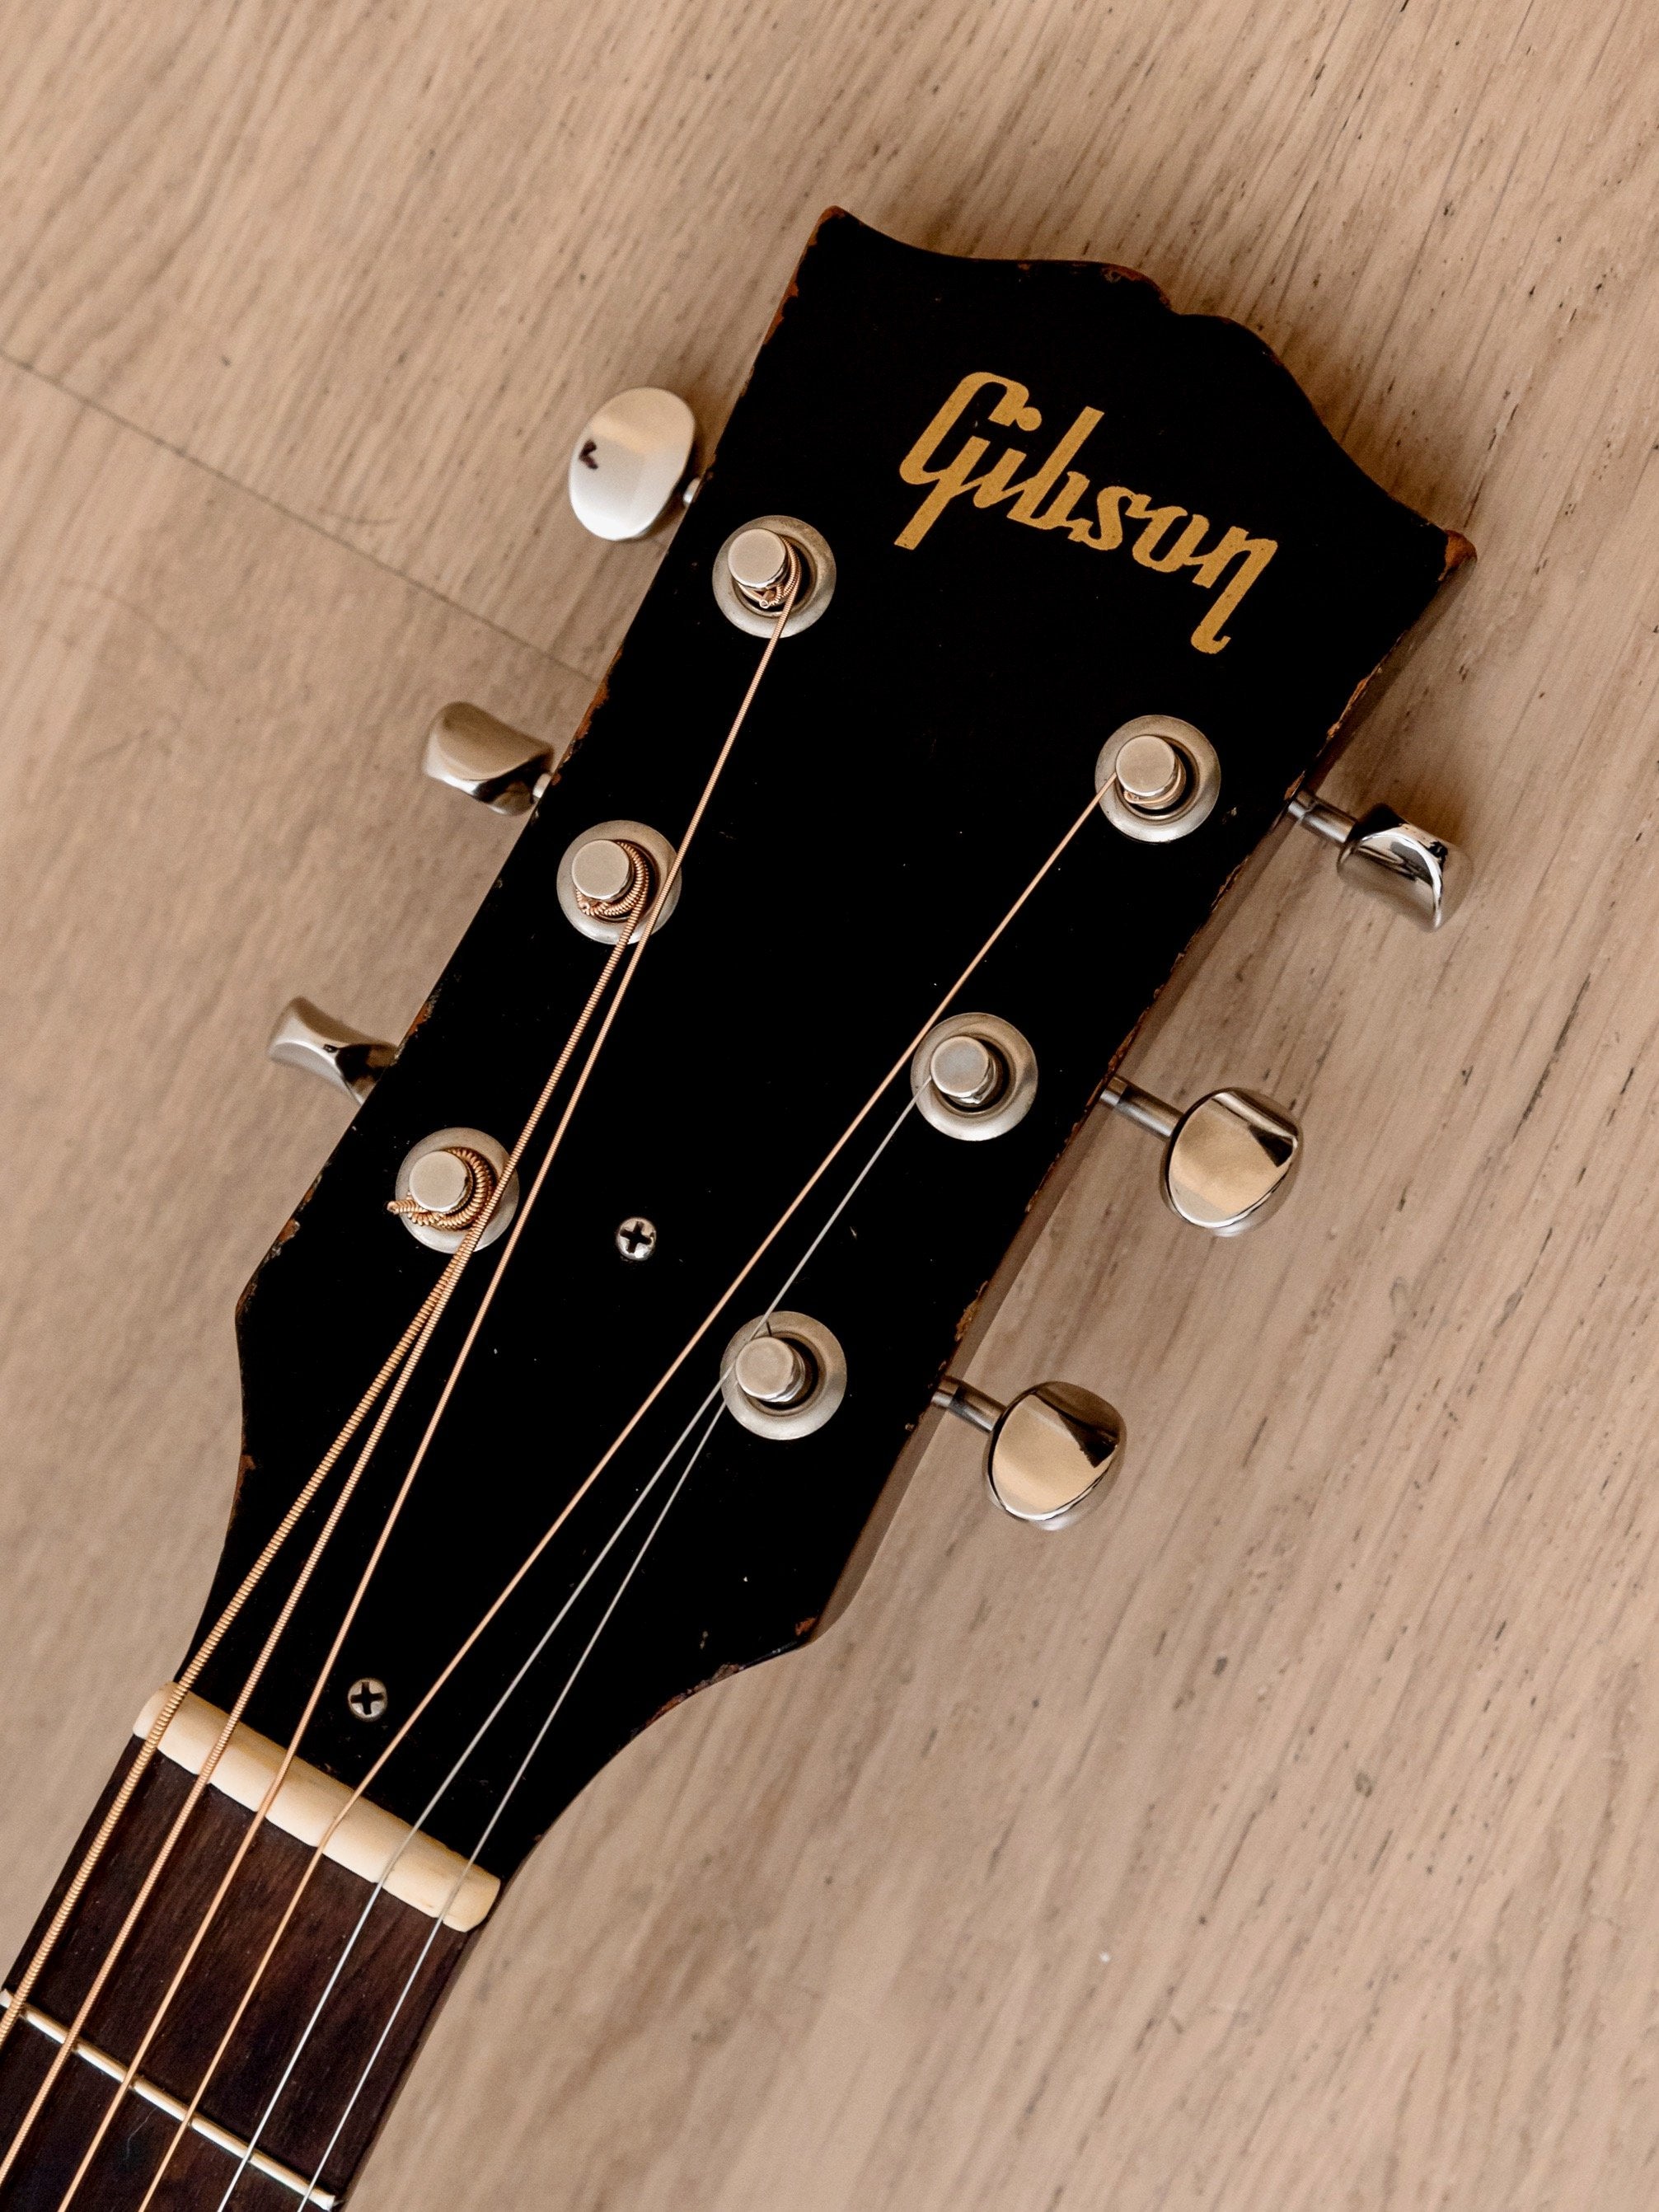 1950 Gibson LG-2 3/4 Vintage Short Scale Acoustic Guitar Sunburst w/ Case